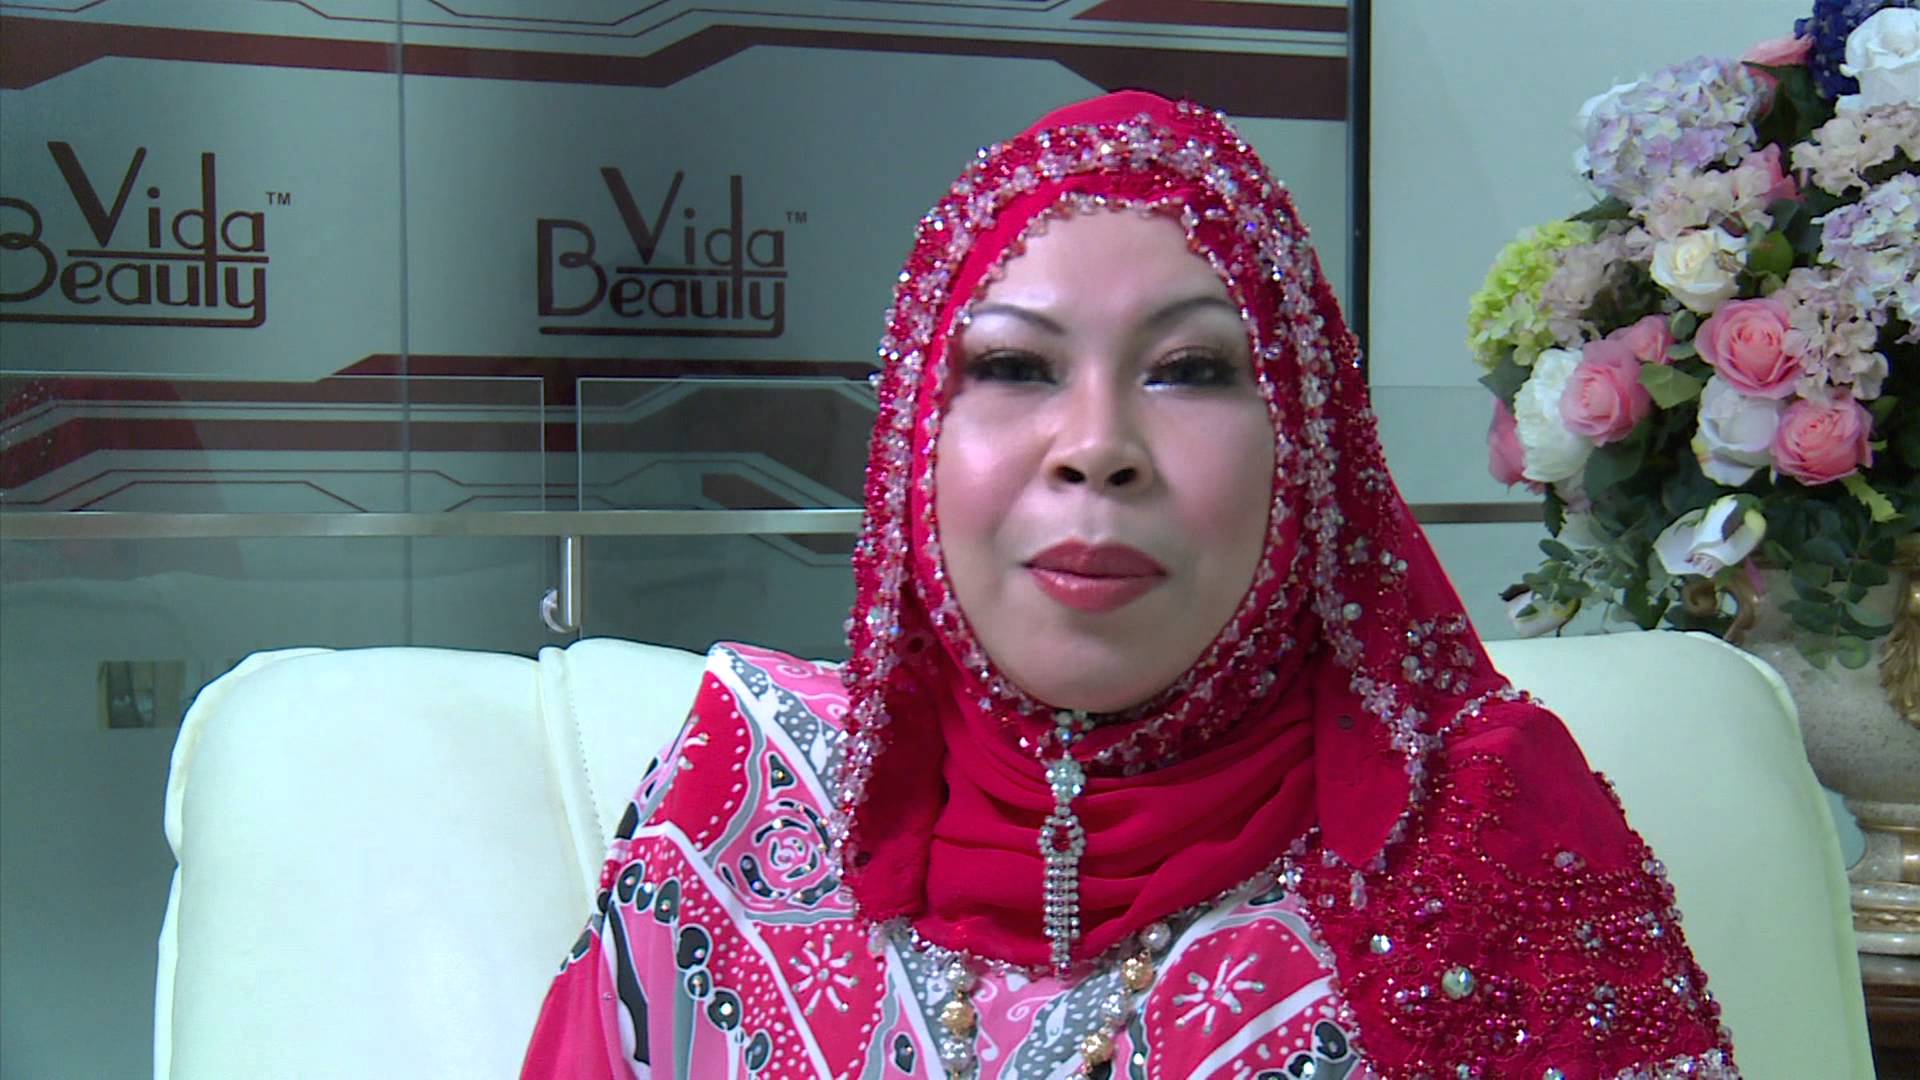 Datuk Seri Vida: "Saya Tidak Berhutang Apa-Apa Dengan KAFA"